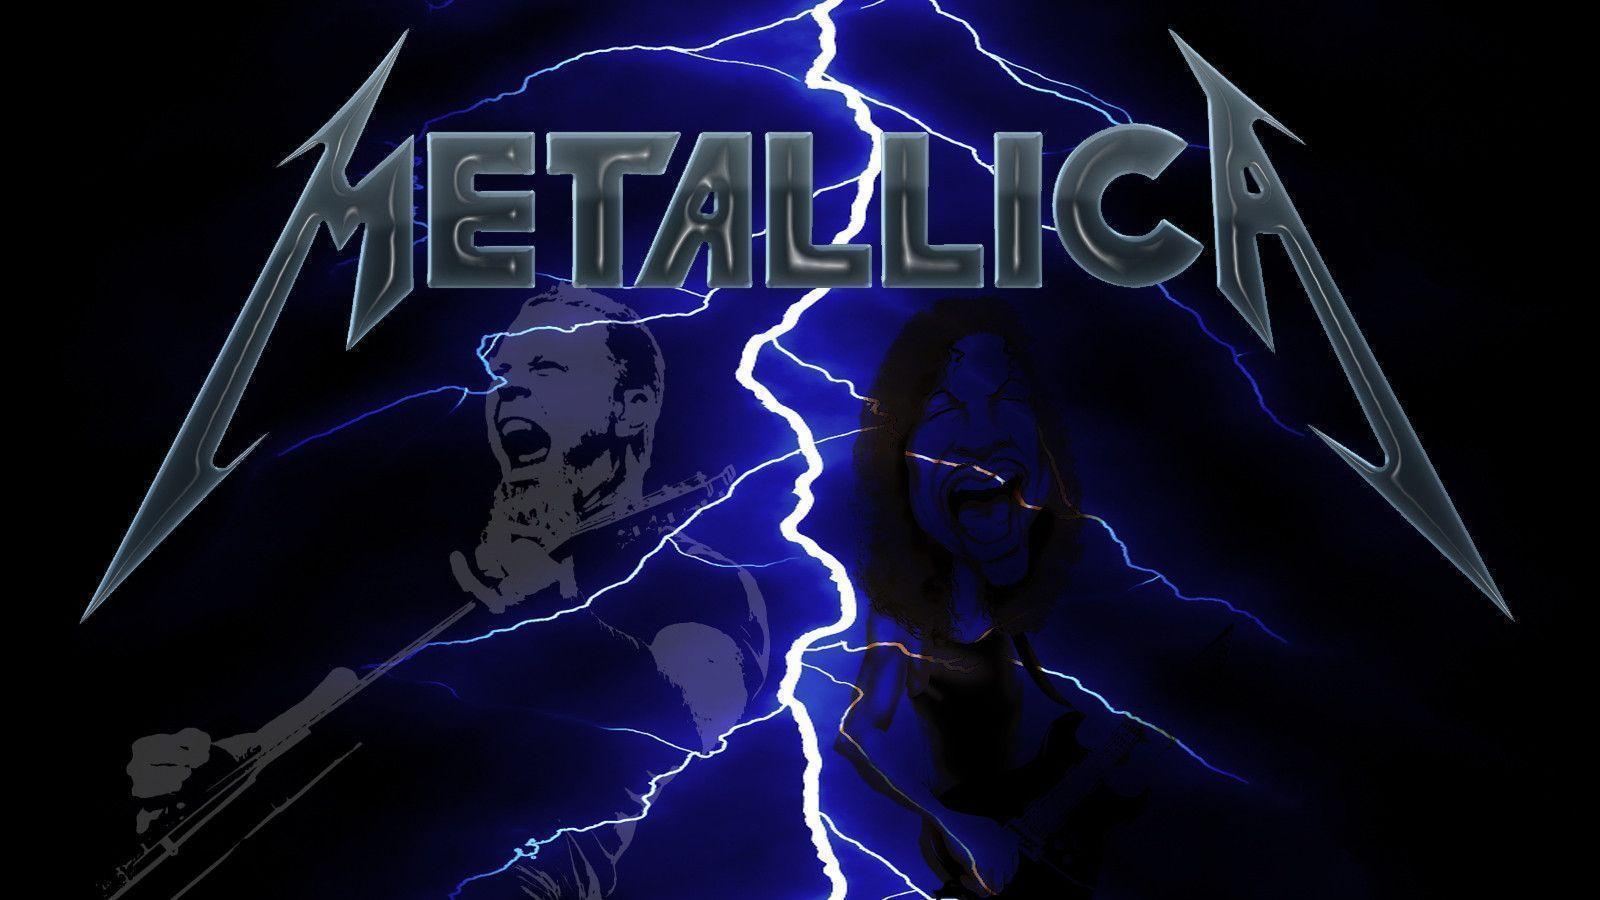 Metallica Fondos